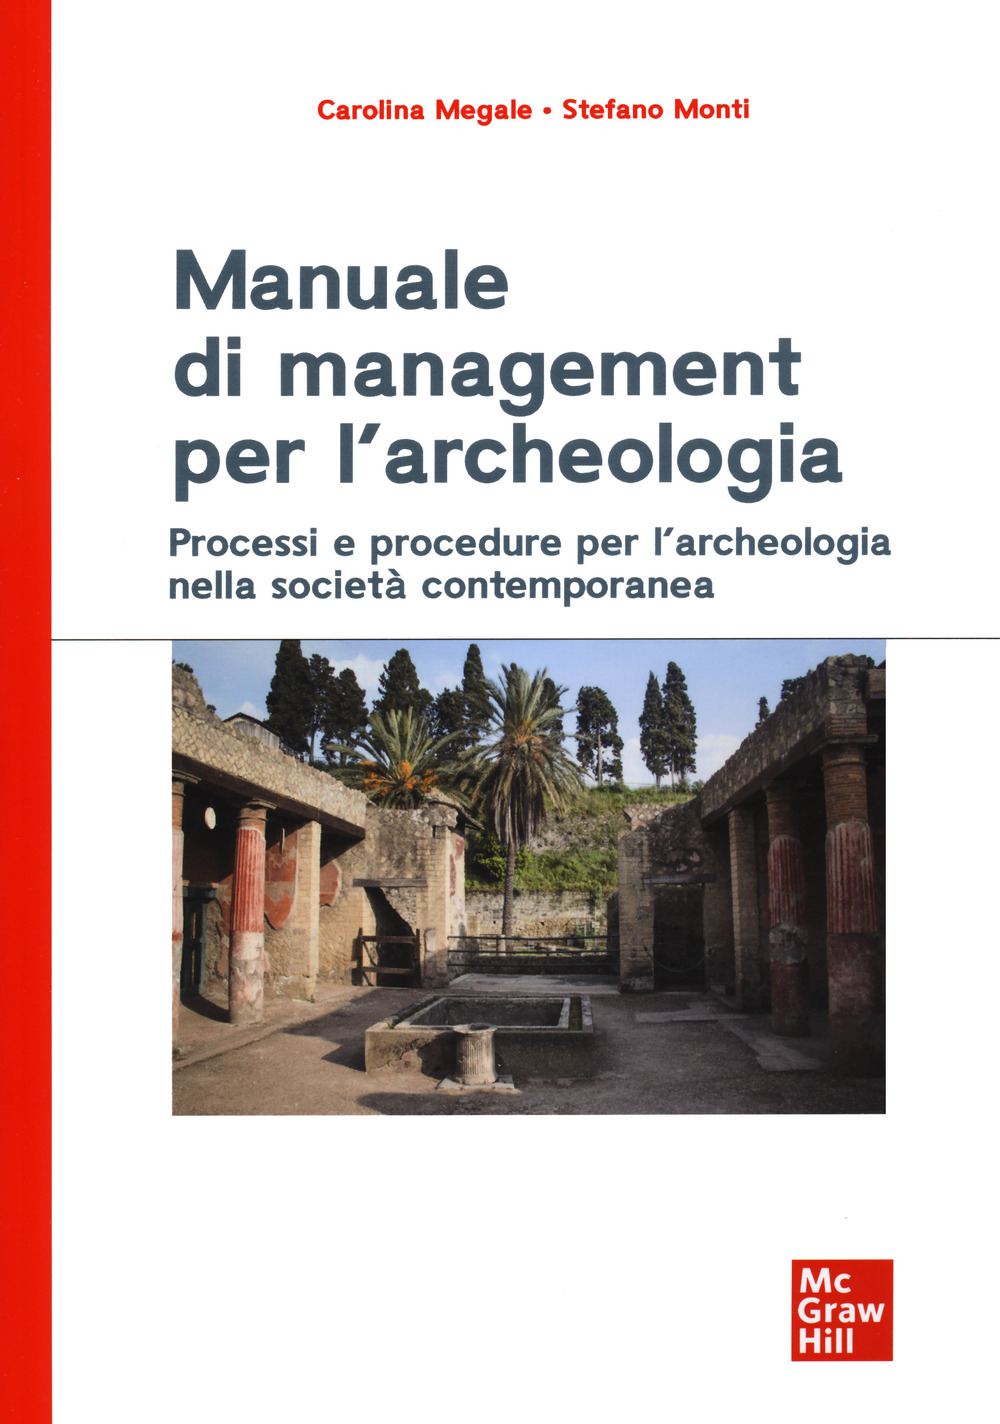 Manuale di management per l'archeologia. Processi e procedure per l'archeologia nella società contemporanea